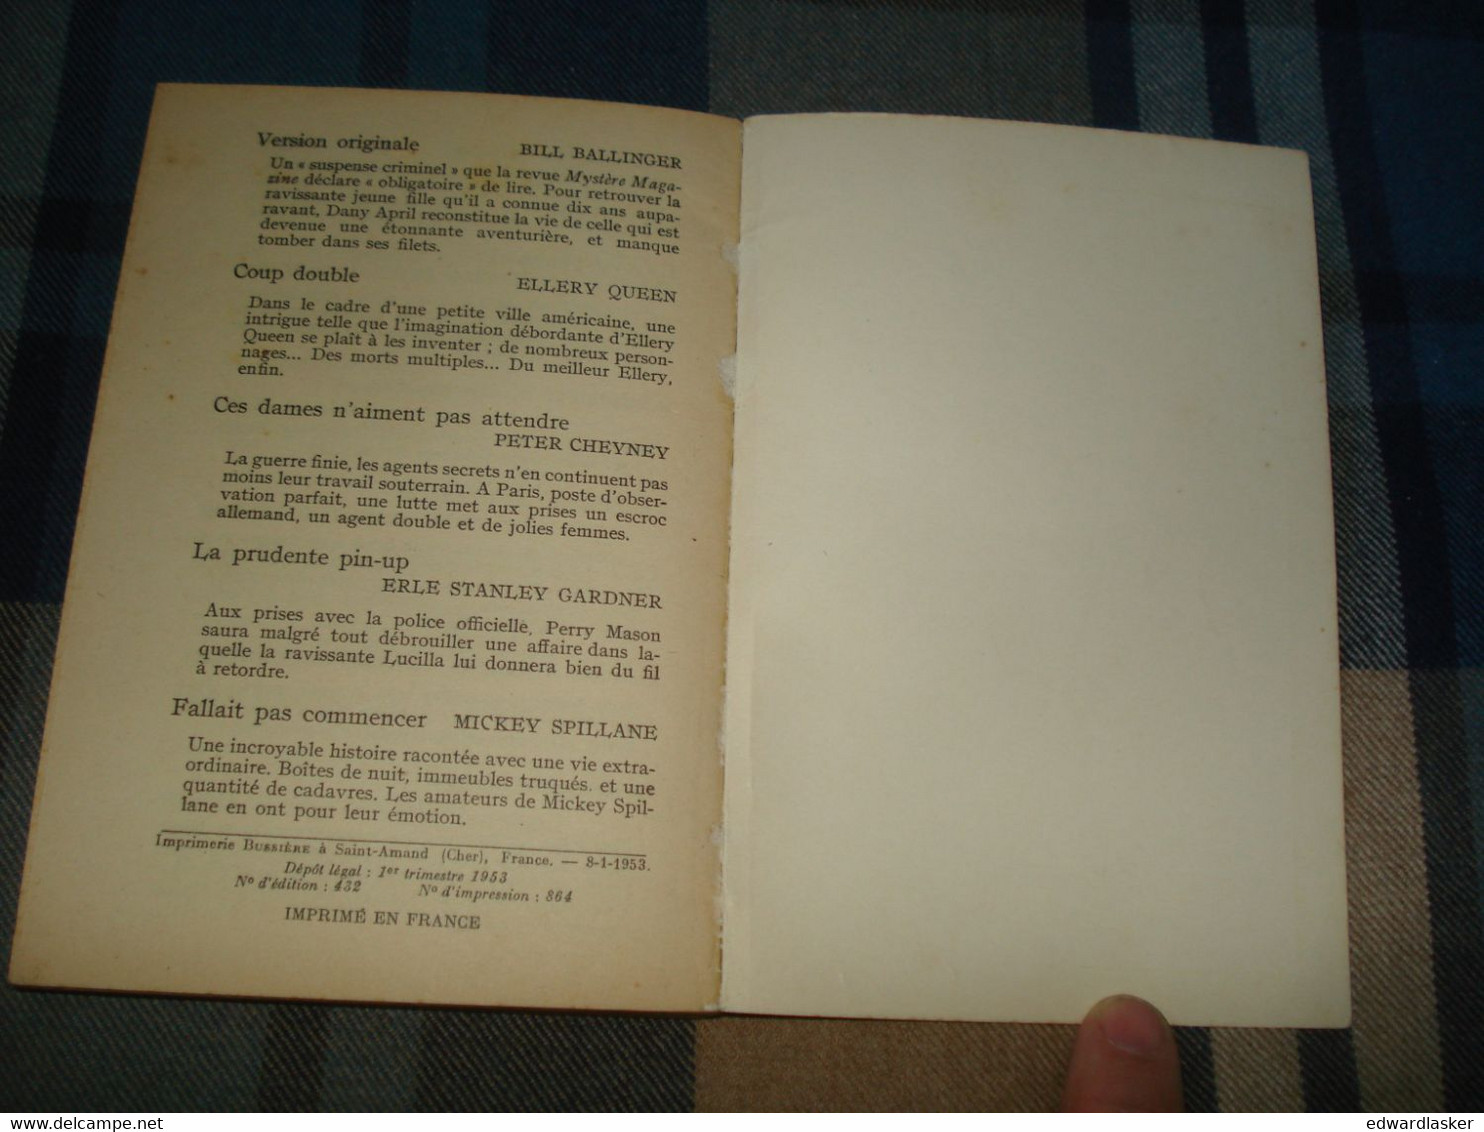 Un MYSTERE N°111 : La MORT Franco De Port /Ben BENSON - Janvier 1953 [2] - Presses De La Cité